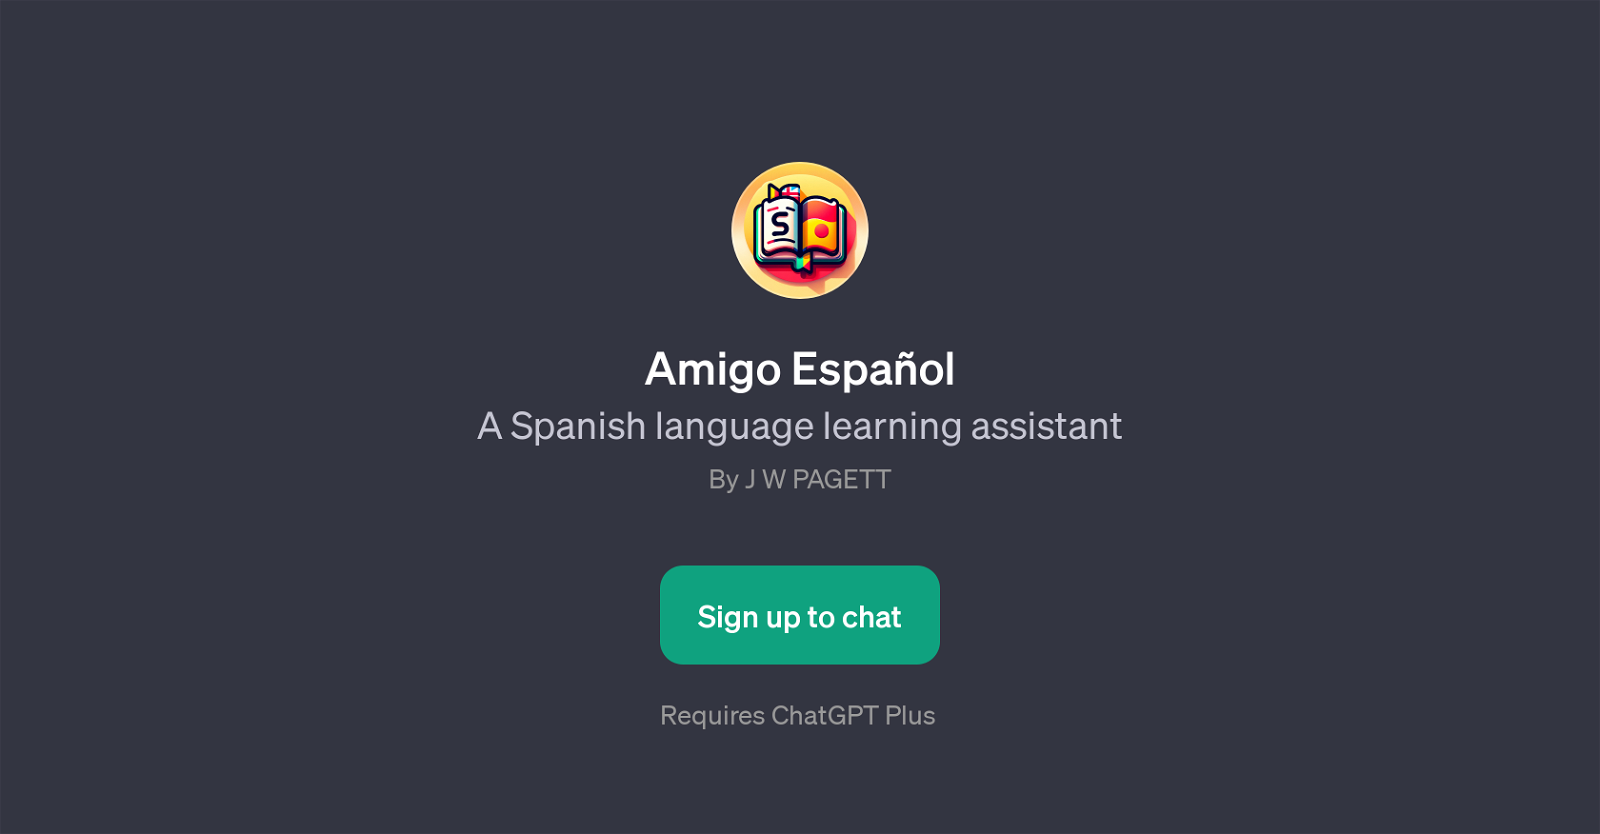 Amigo Espaol website